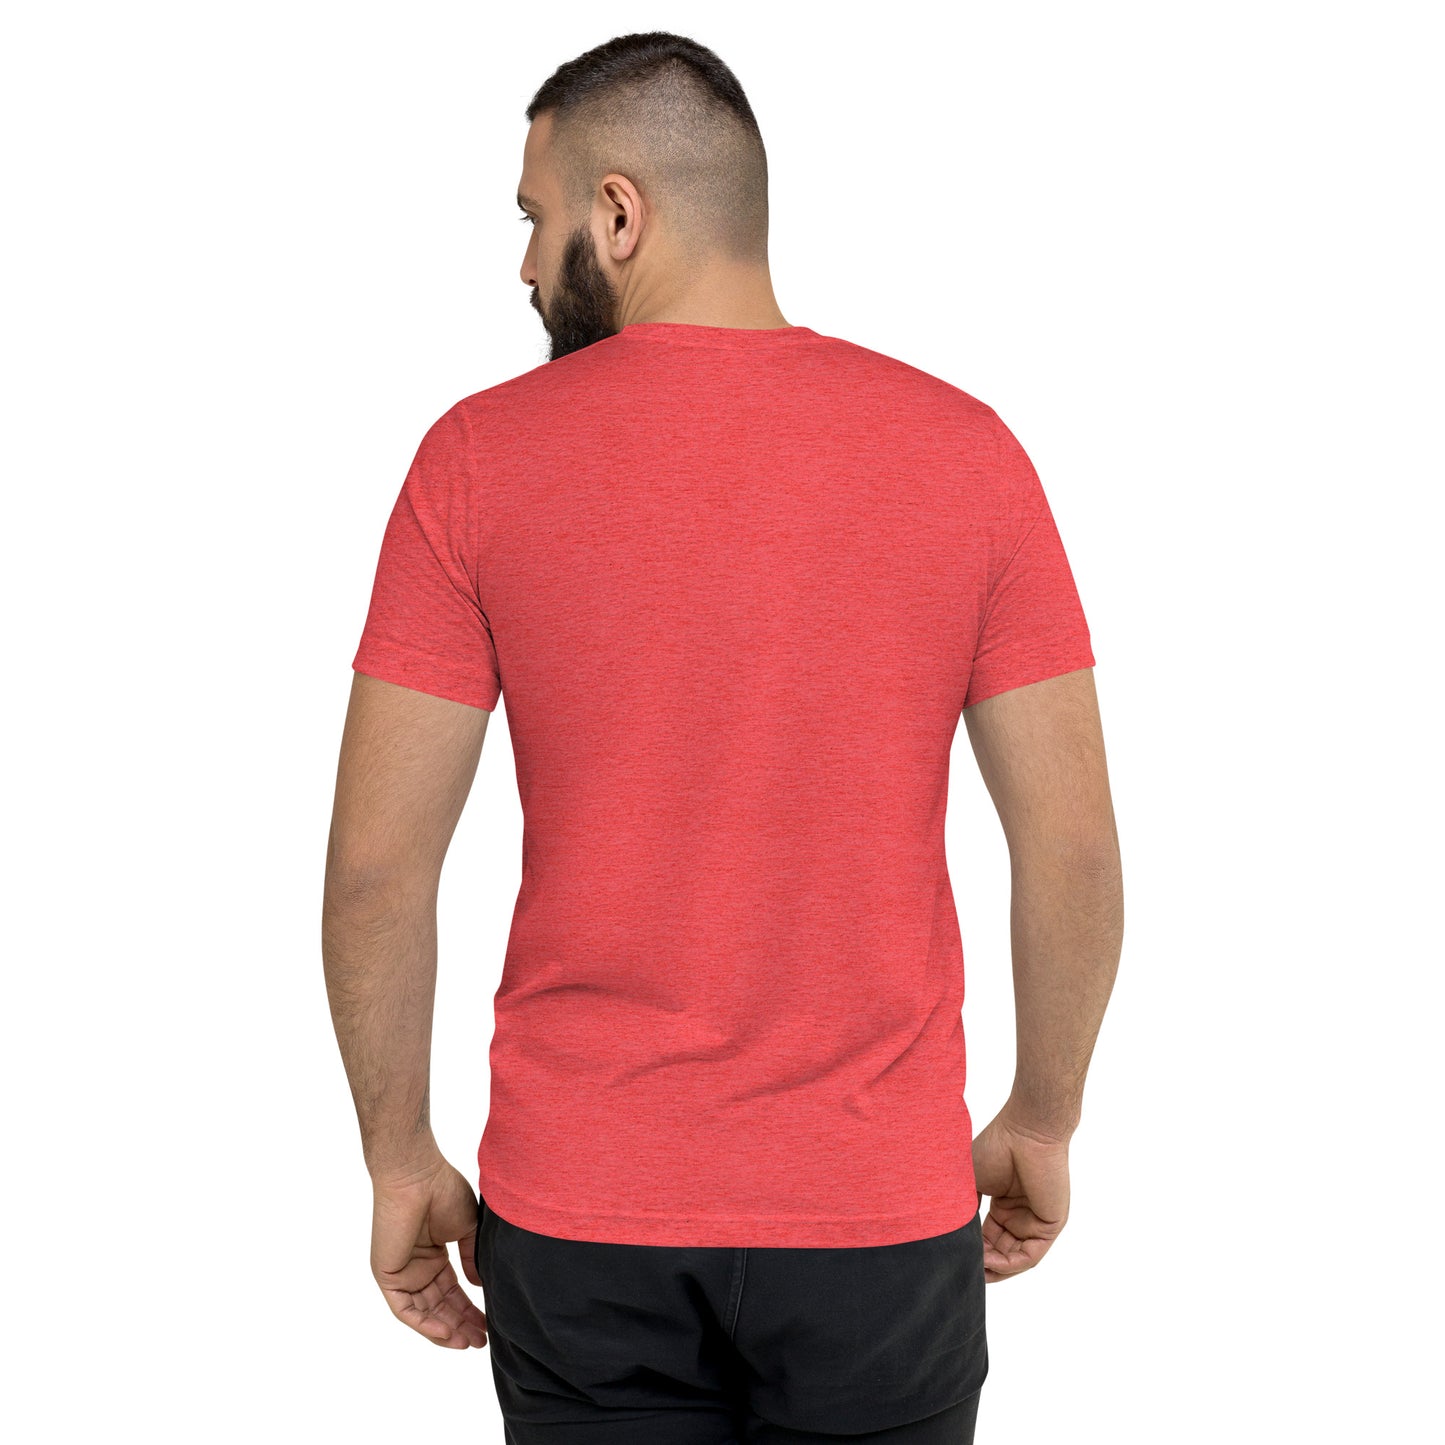 KC Kansas City Strong Short Sleeve Tri-Blend T-Shirt